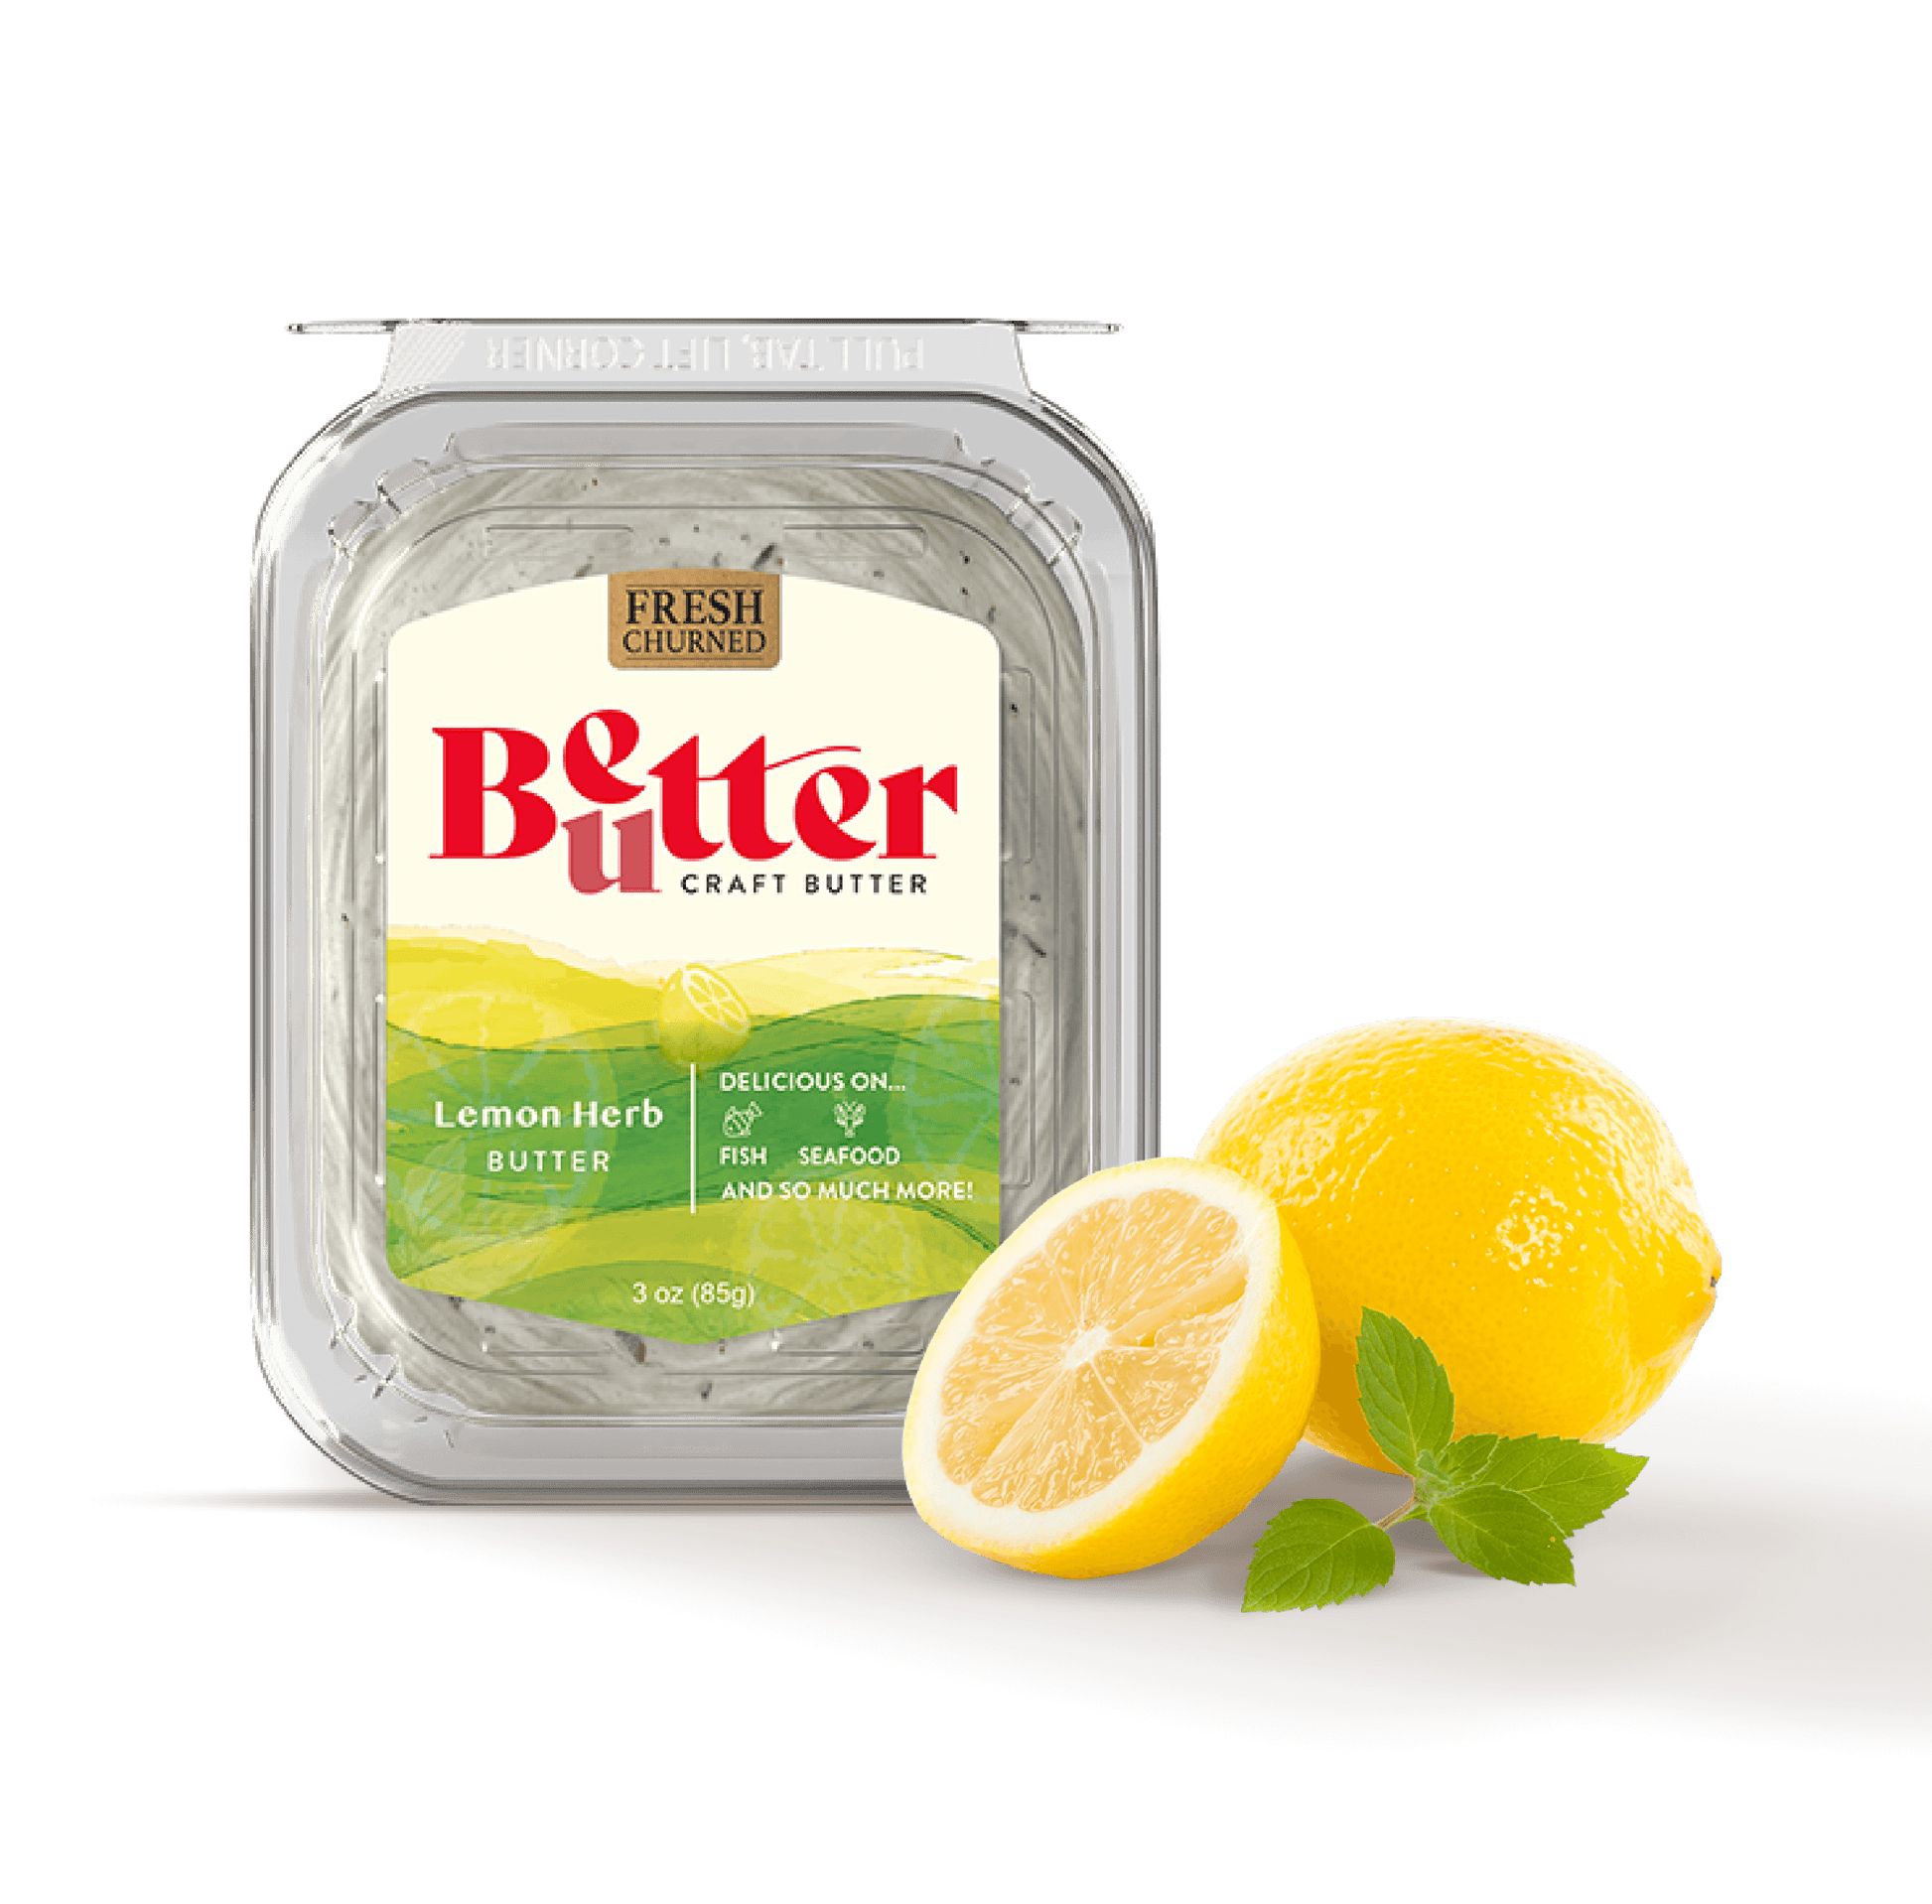 Lemon Herb Craft Butter from Better Butter